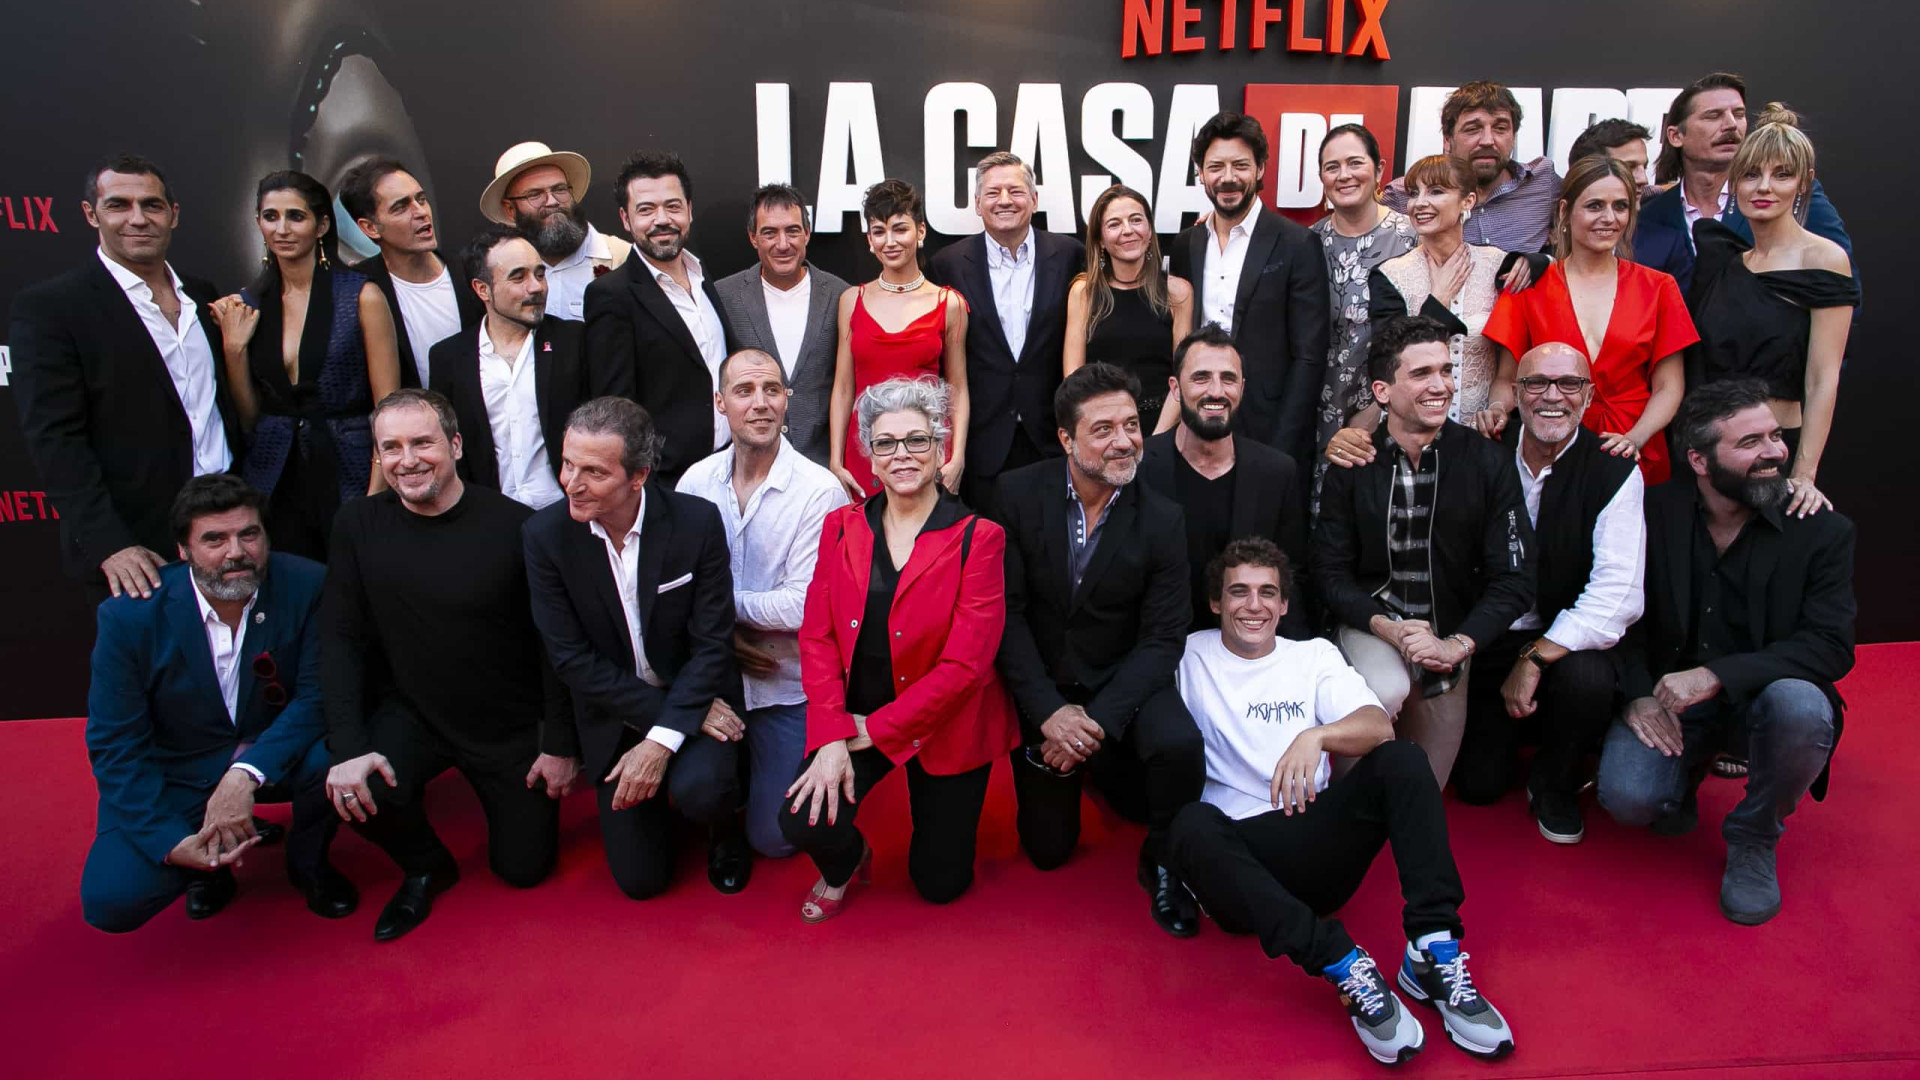 La Casa de Papel: Looks do red carpet da estreia da 3ª temporada